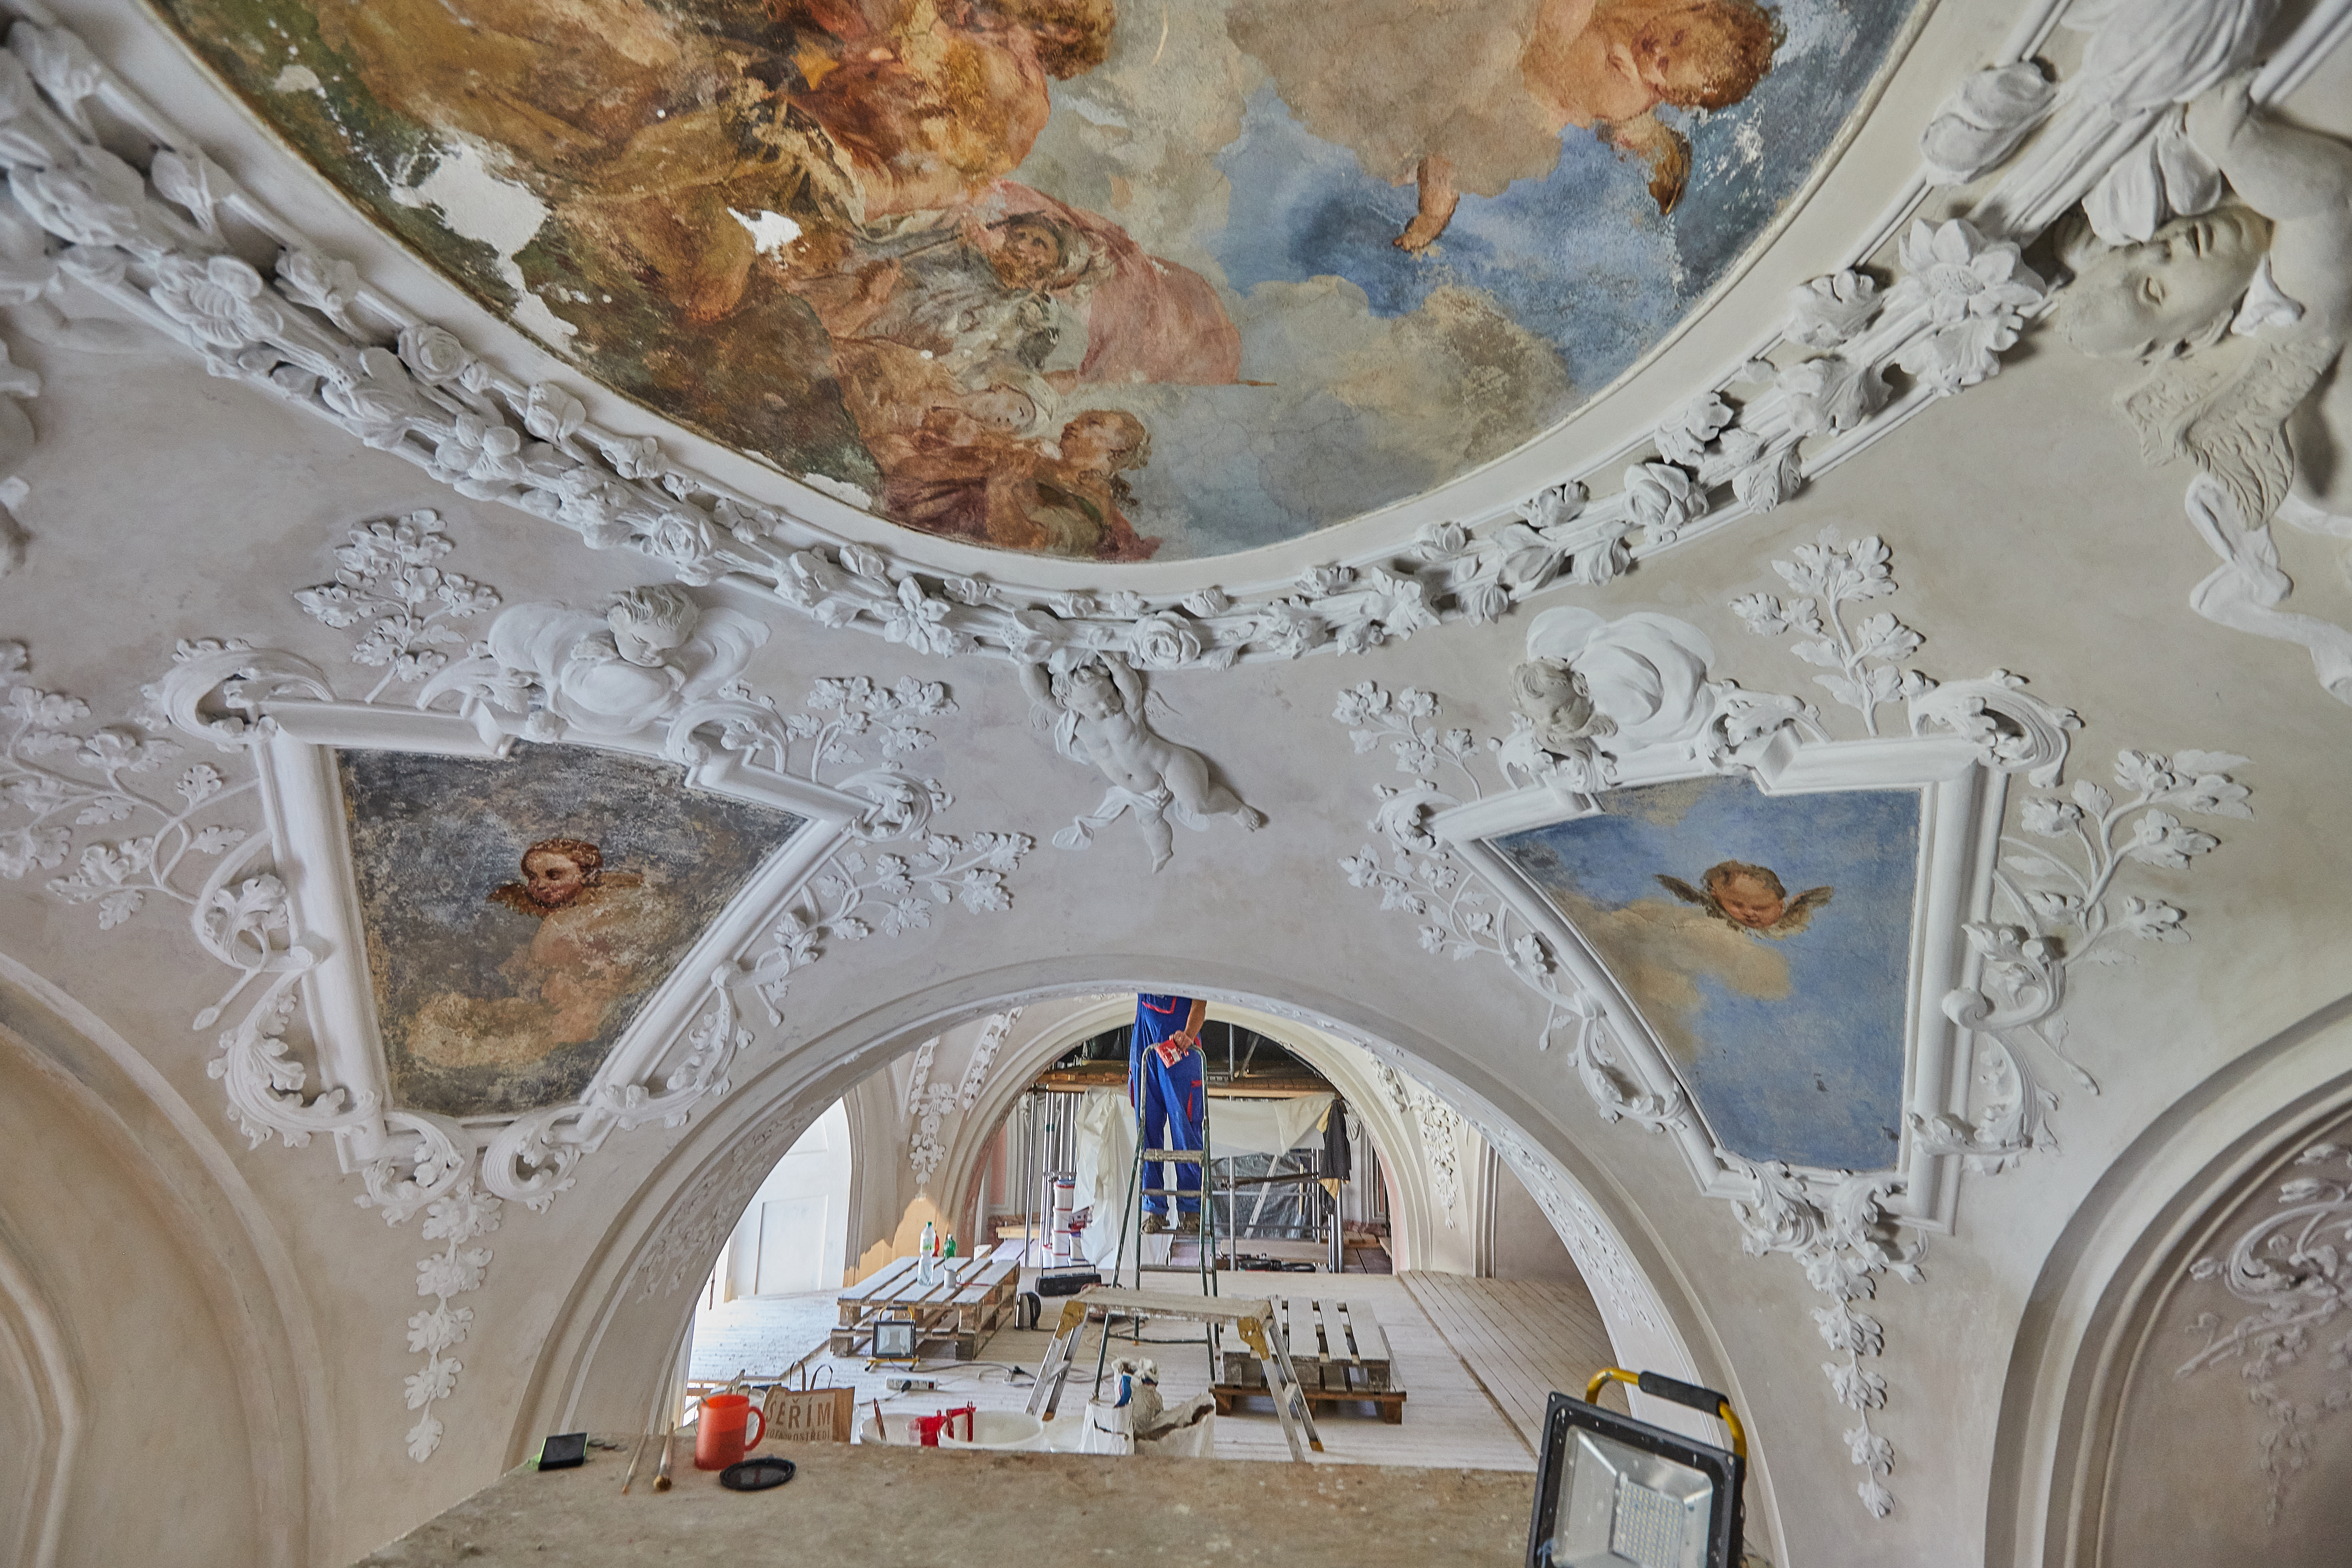 Revitalizace kláštera Osek - evropské centrum kultury a vzdělanosti